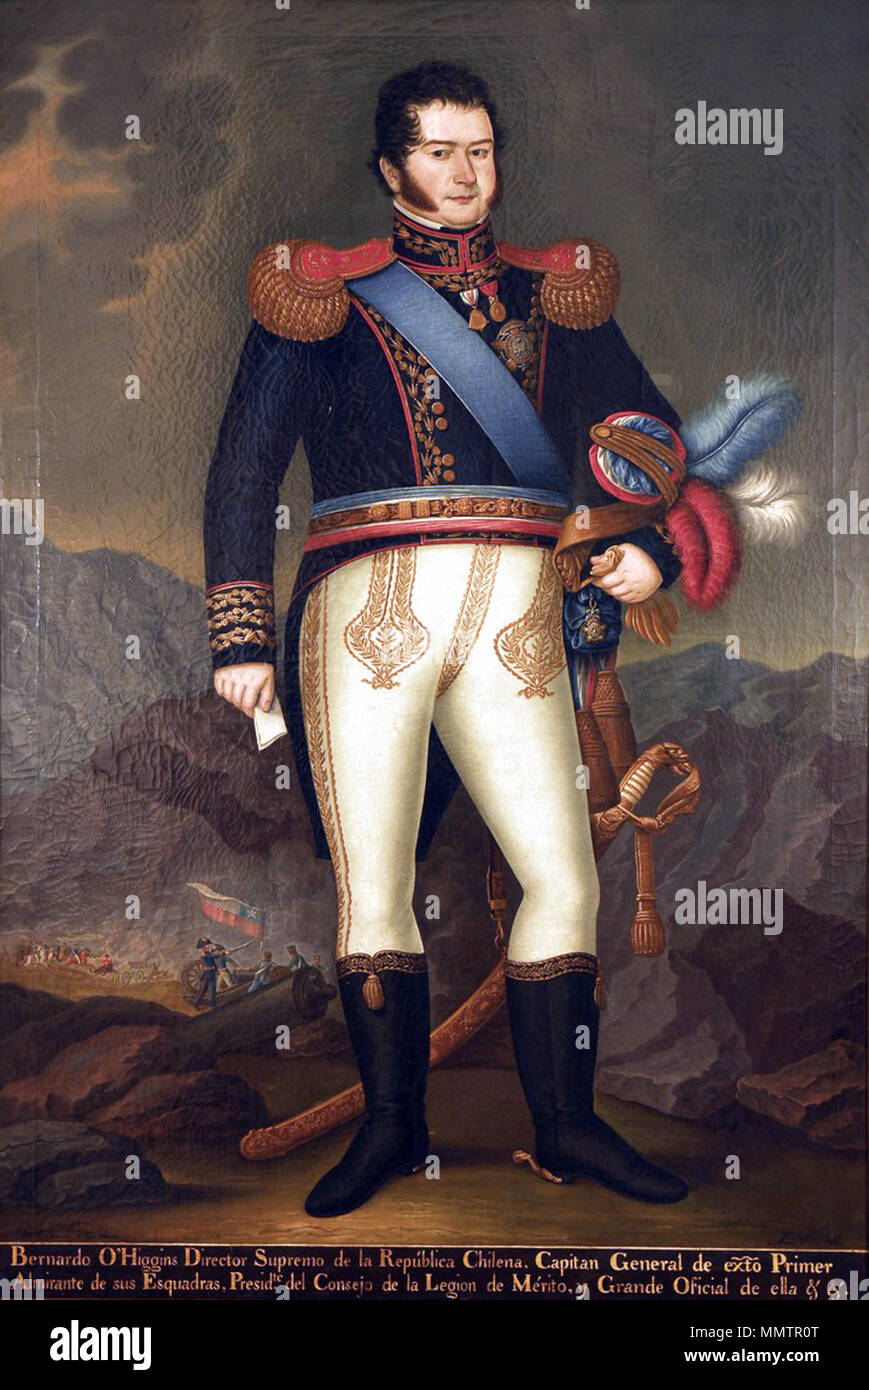 Capitán General Bernardo O'Higgins Riquelme Stock Photo